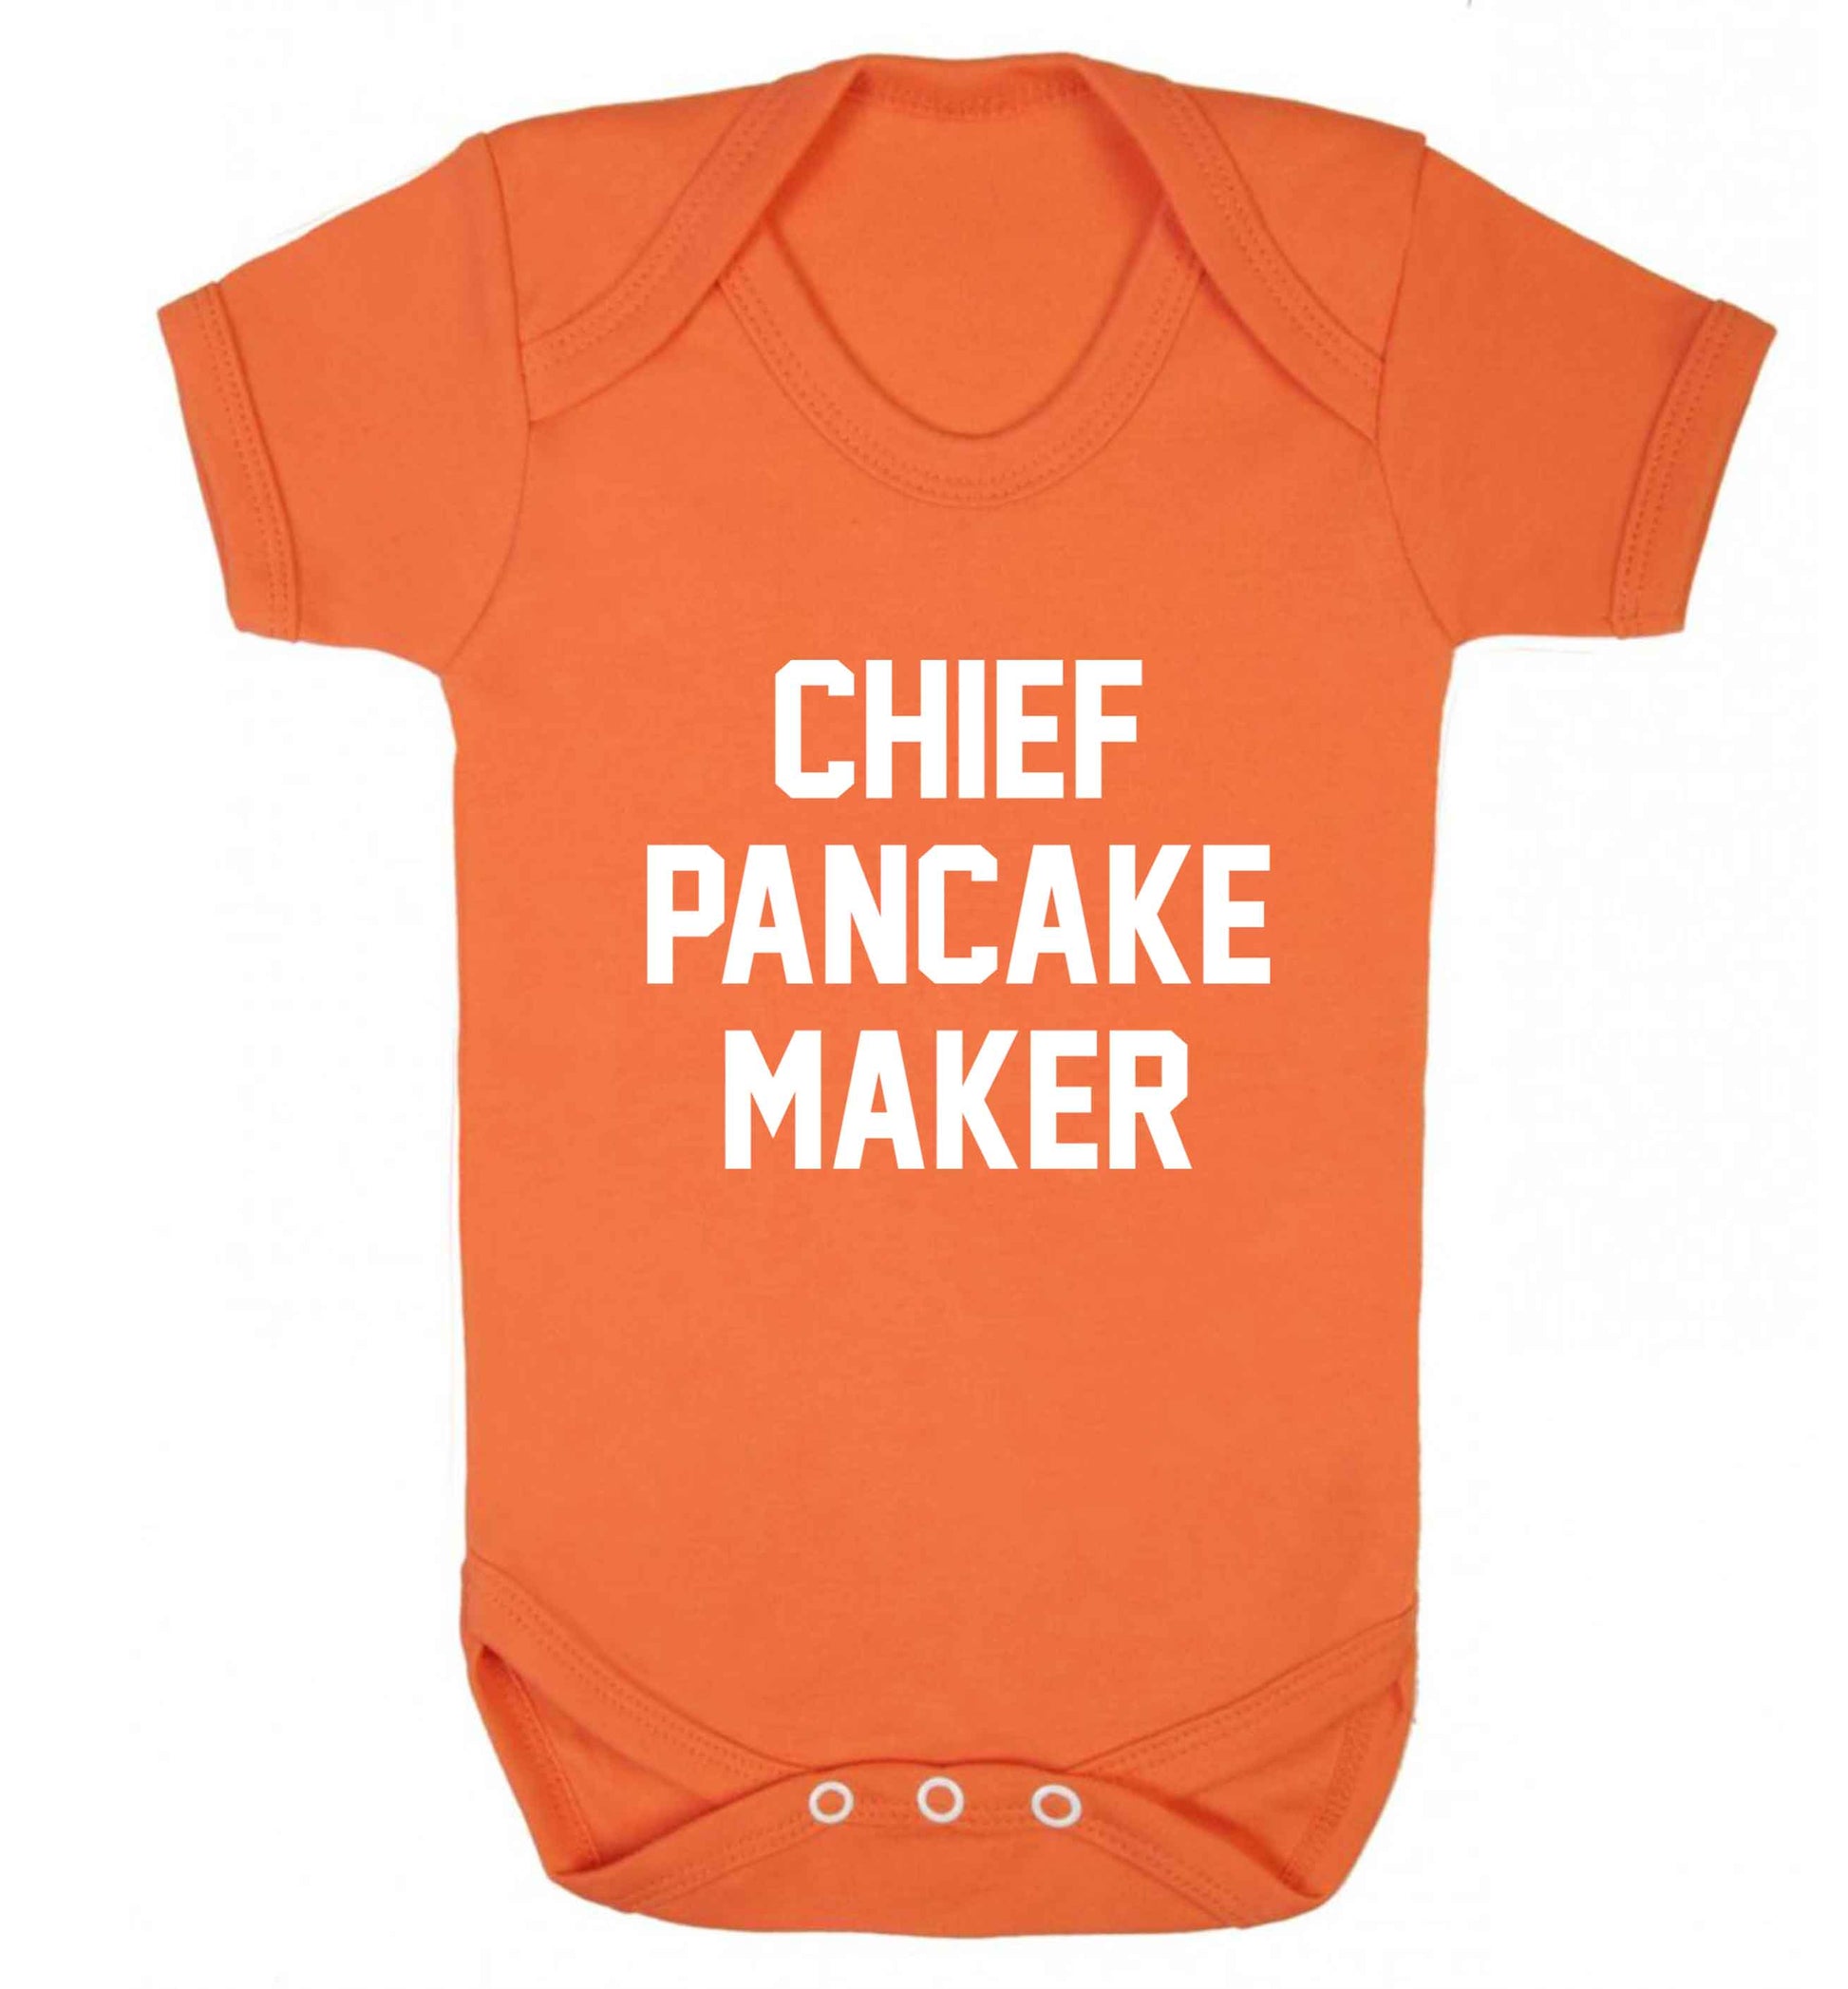 Chief pancake maker baby vest orange 18-24 months